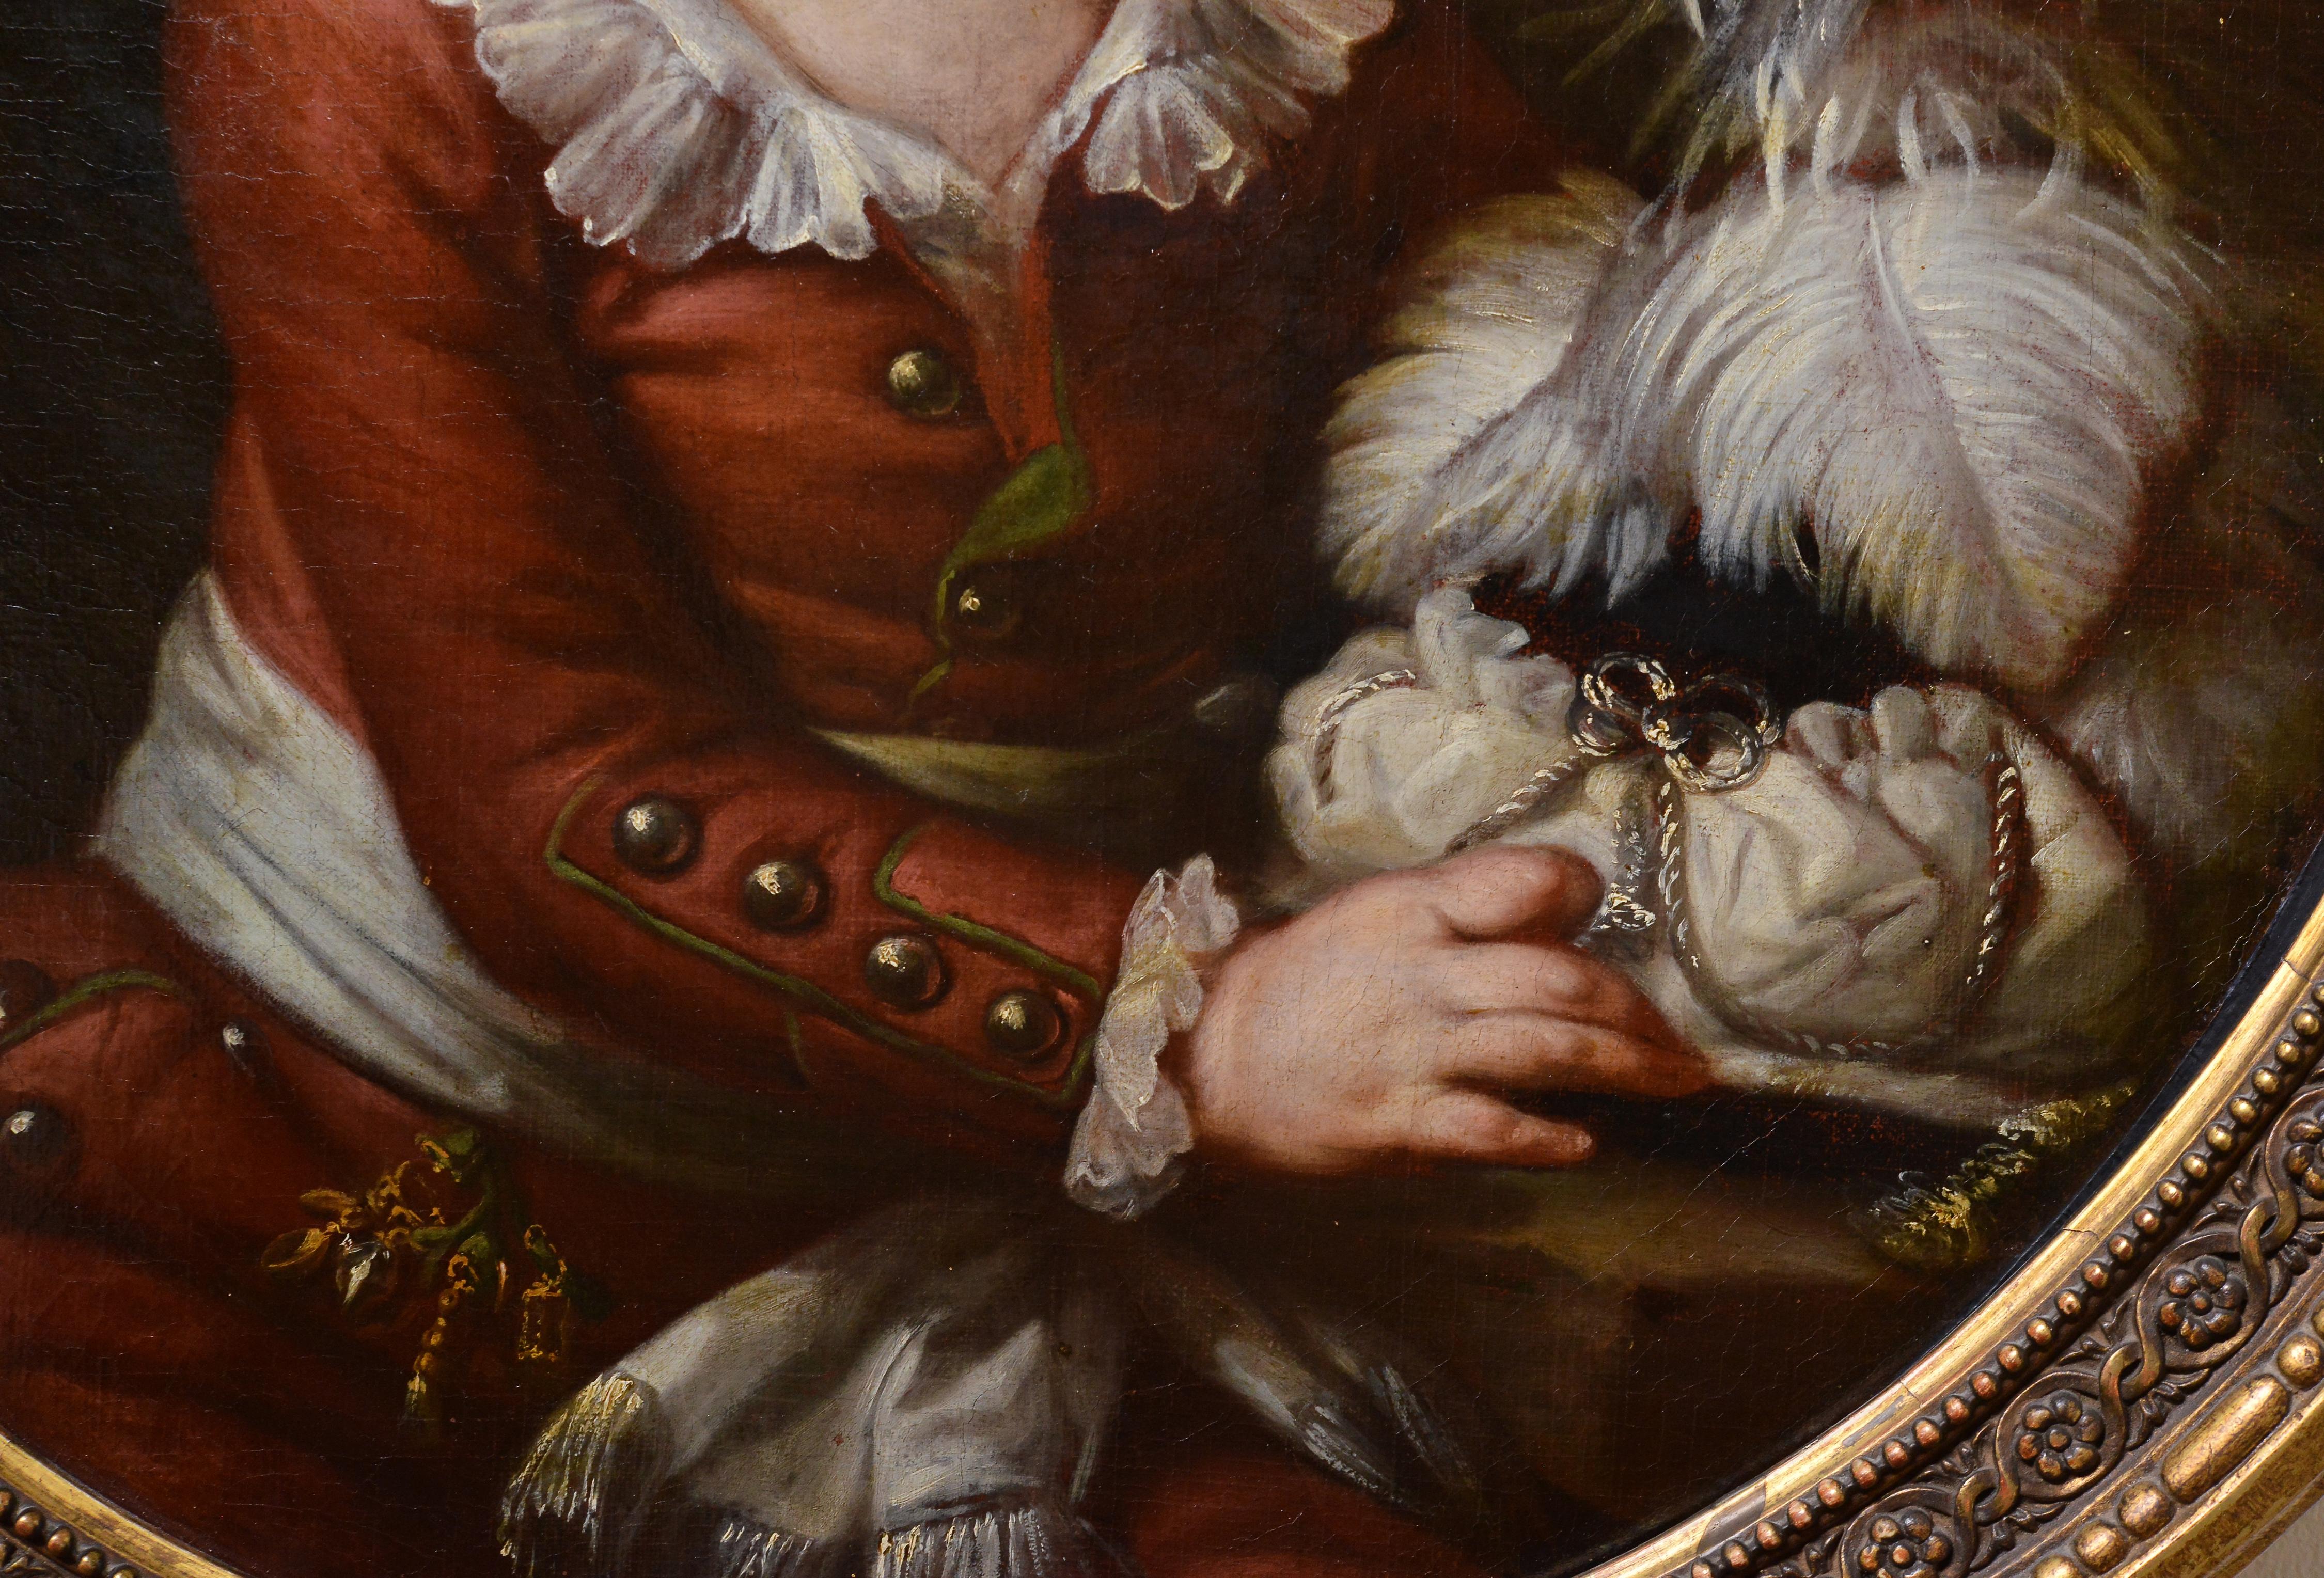 Das Porträt wird der französischen Malerin Monique Daniche (1737 - 1824) zugeschrieben.
Prächtig gemaltes Barockporträt eines nicht identifizierten adligen Kindes in modischer Kleidung, das seinen orientalischen Hut mit reichem Federkleid hält und